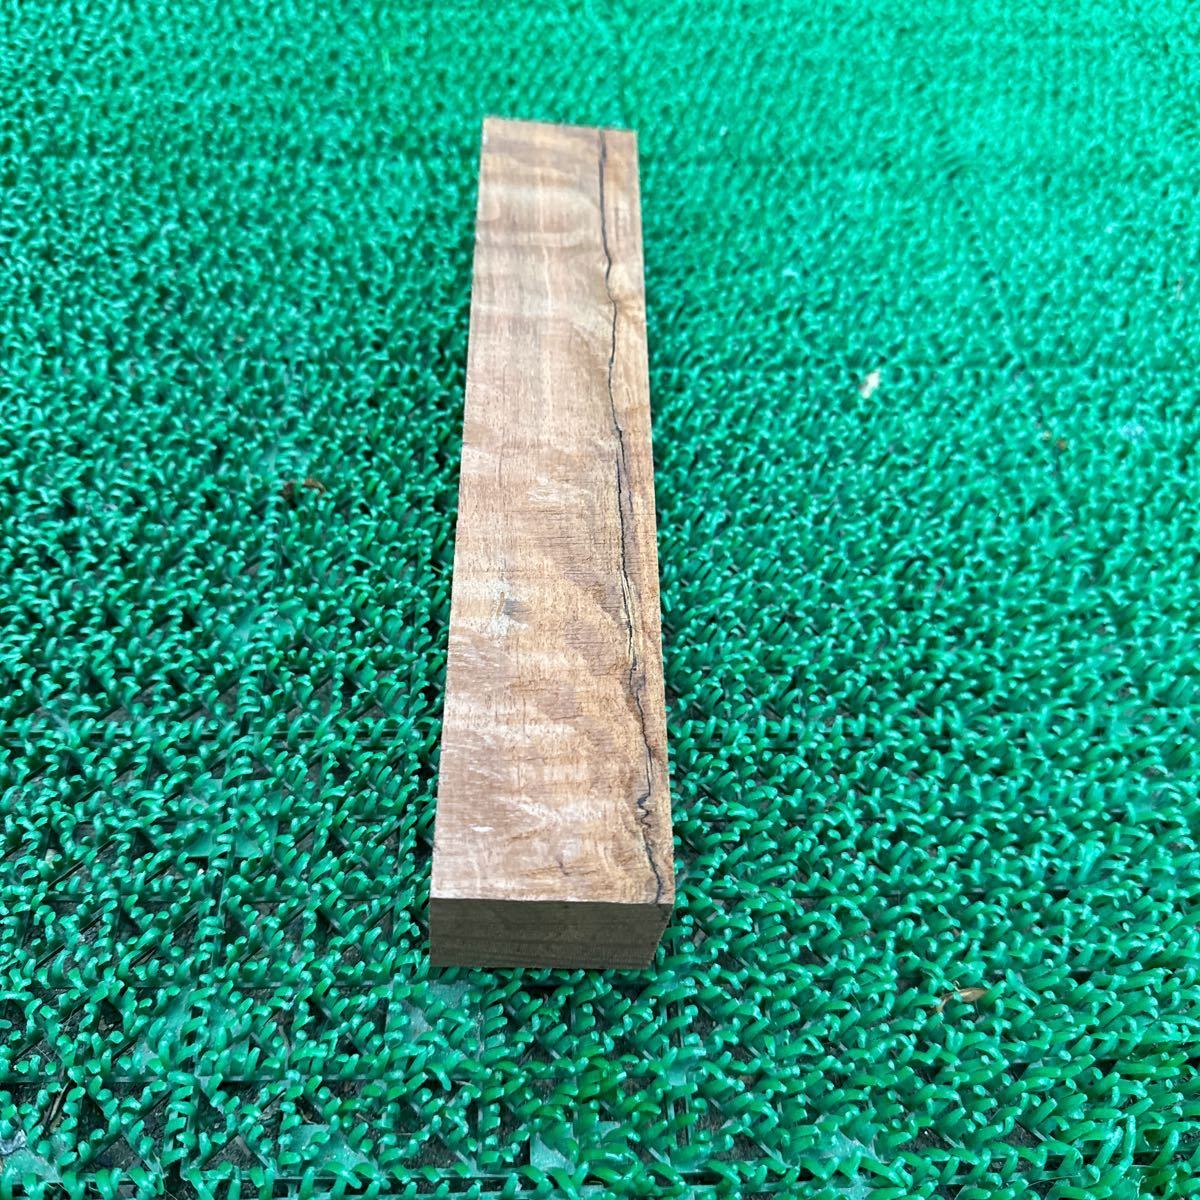  ② シーオーク 22.4×4.4×3.5cm 250g端材 木材_画像4